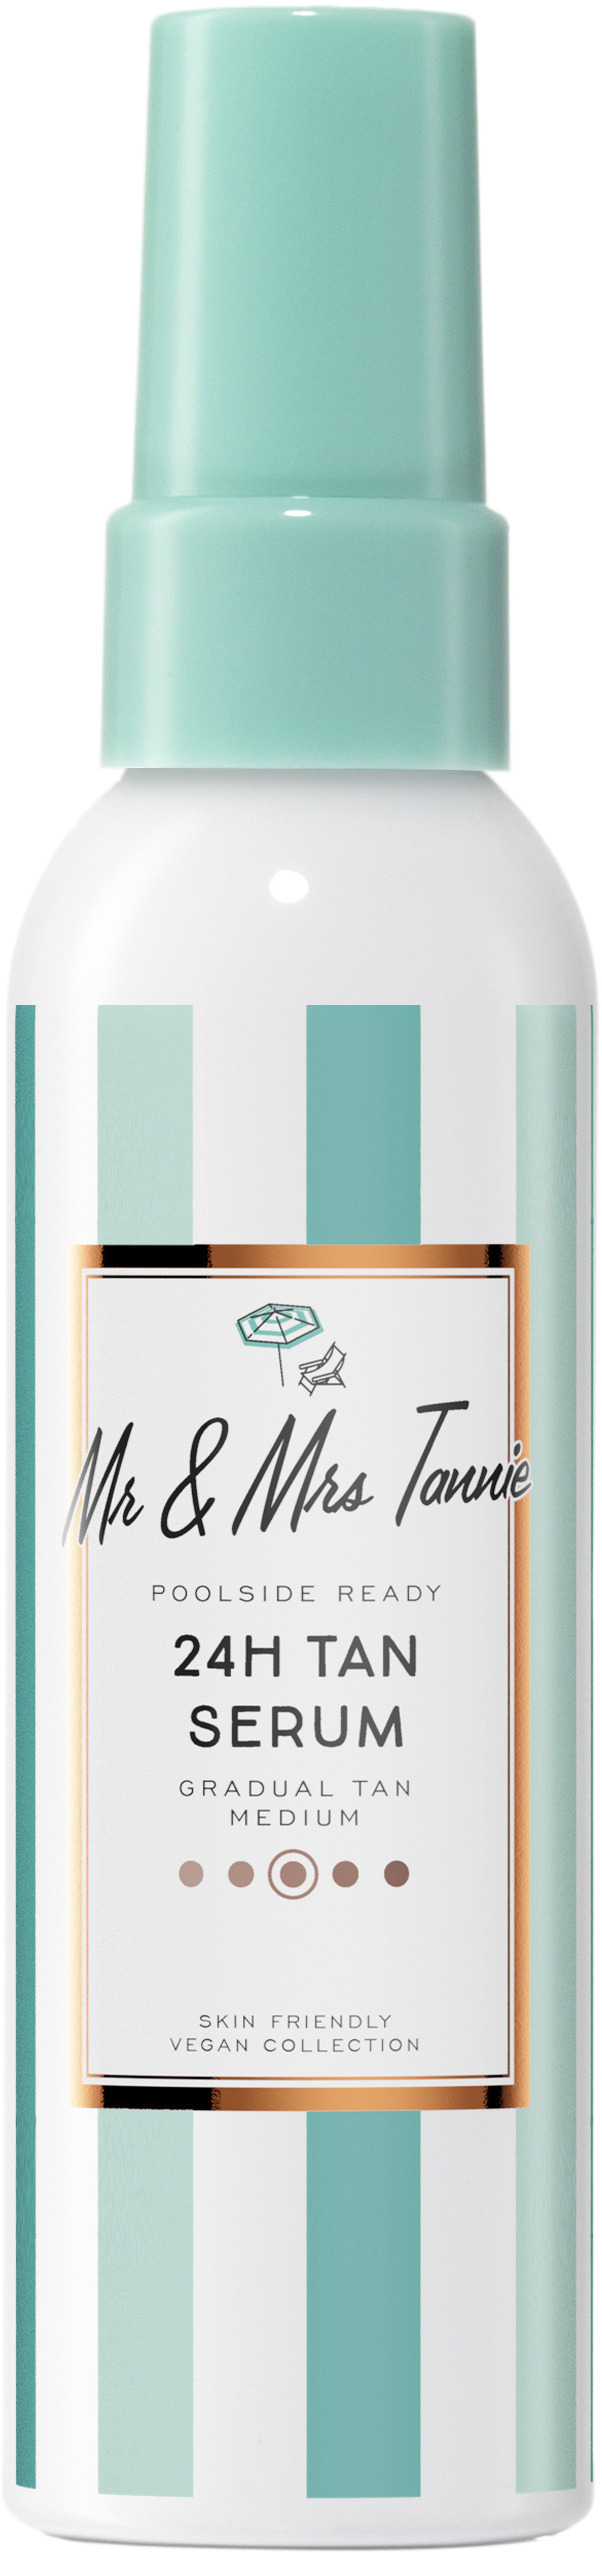 Mr & Mrs Tannie 24H Tan Serum 75 ml